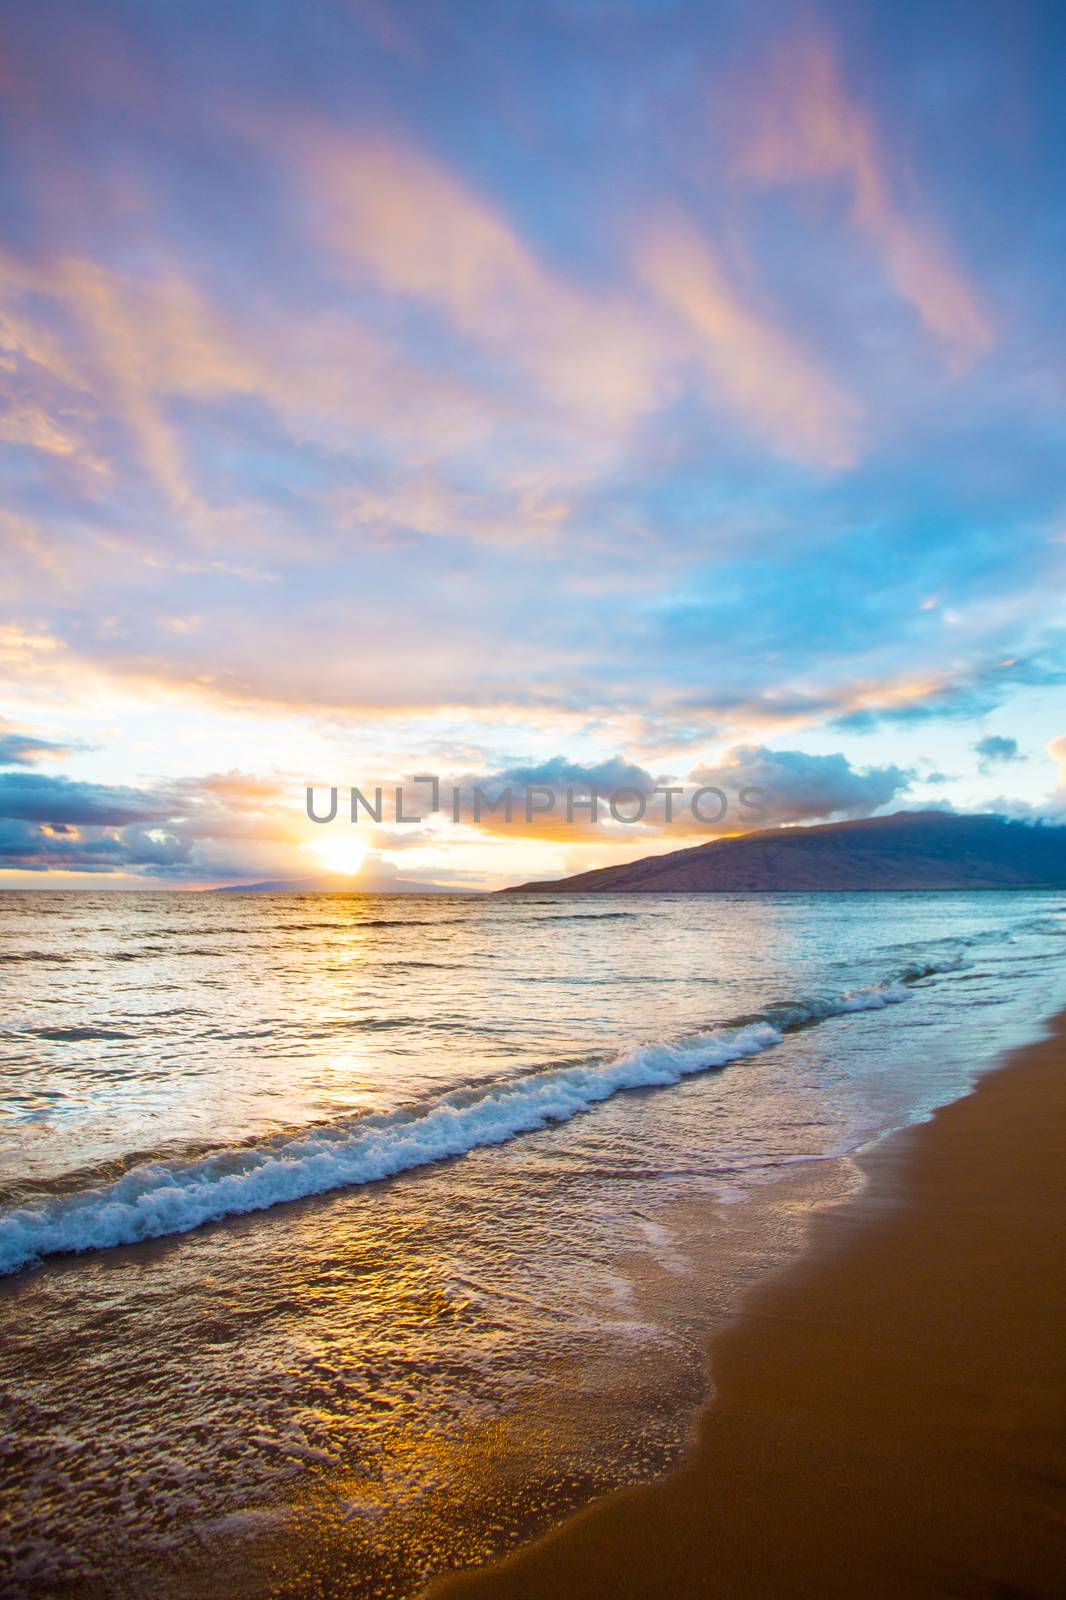 Hawaiian Sunset at Kihei Beach on Maui